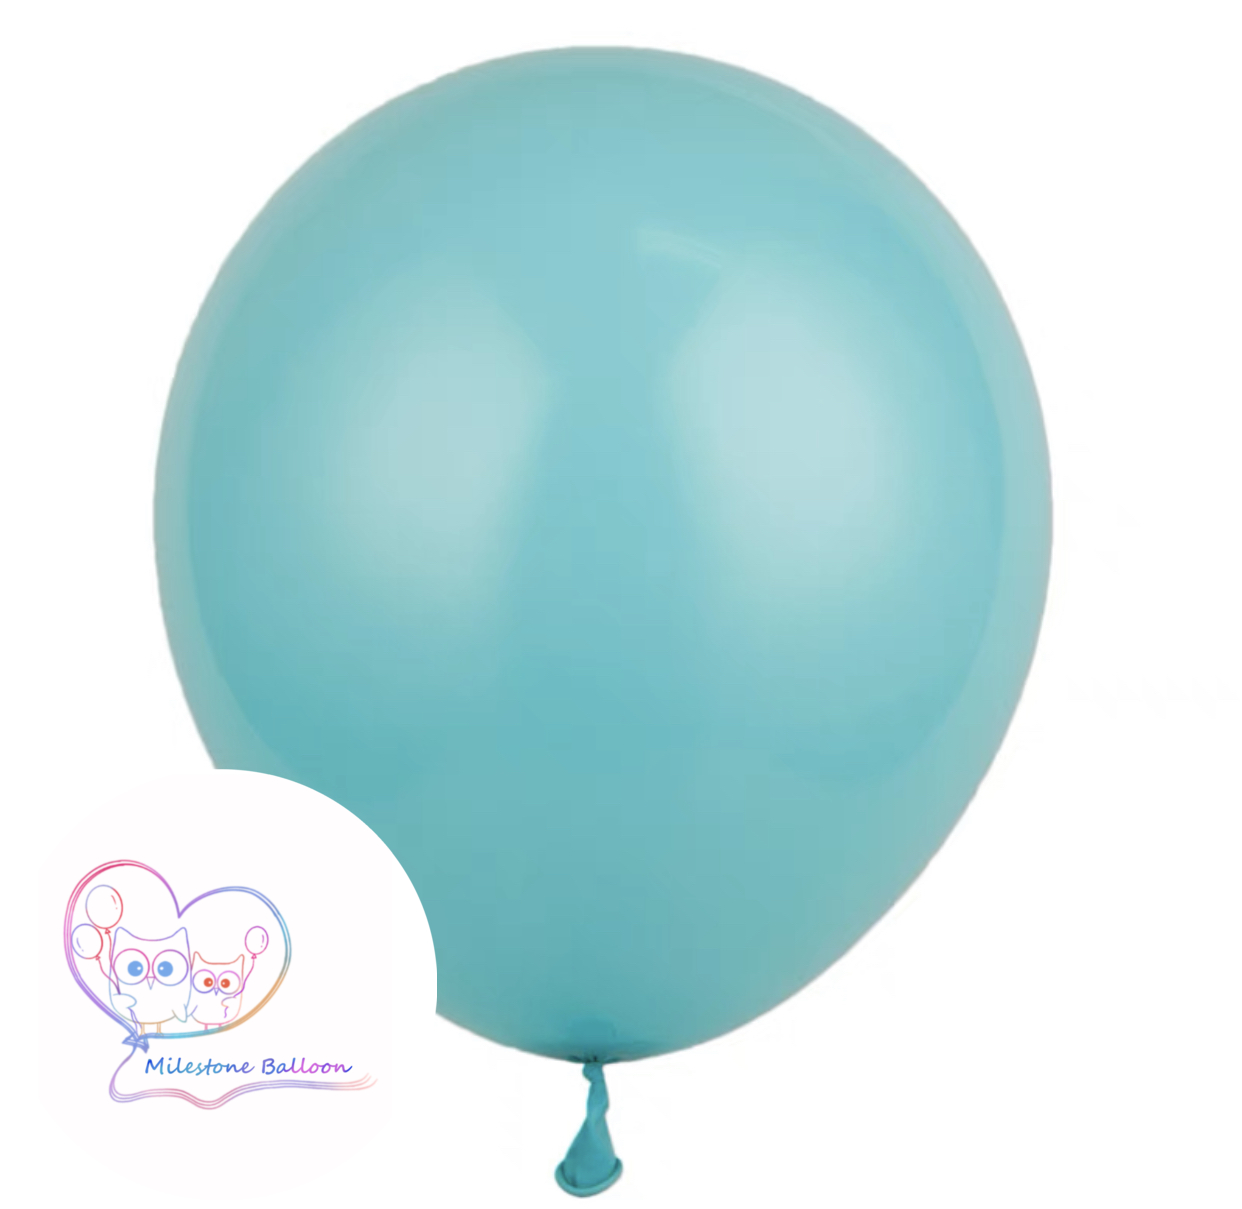 5吋氣球 (湖水綠色) (1pc) 5LB11